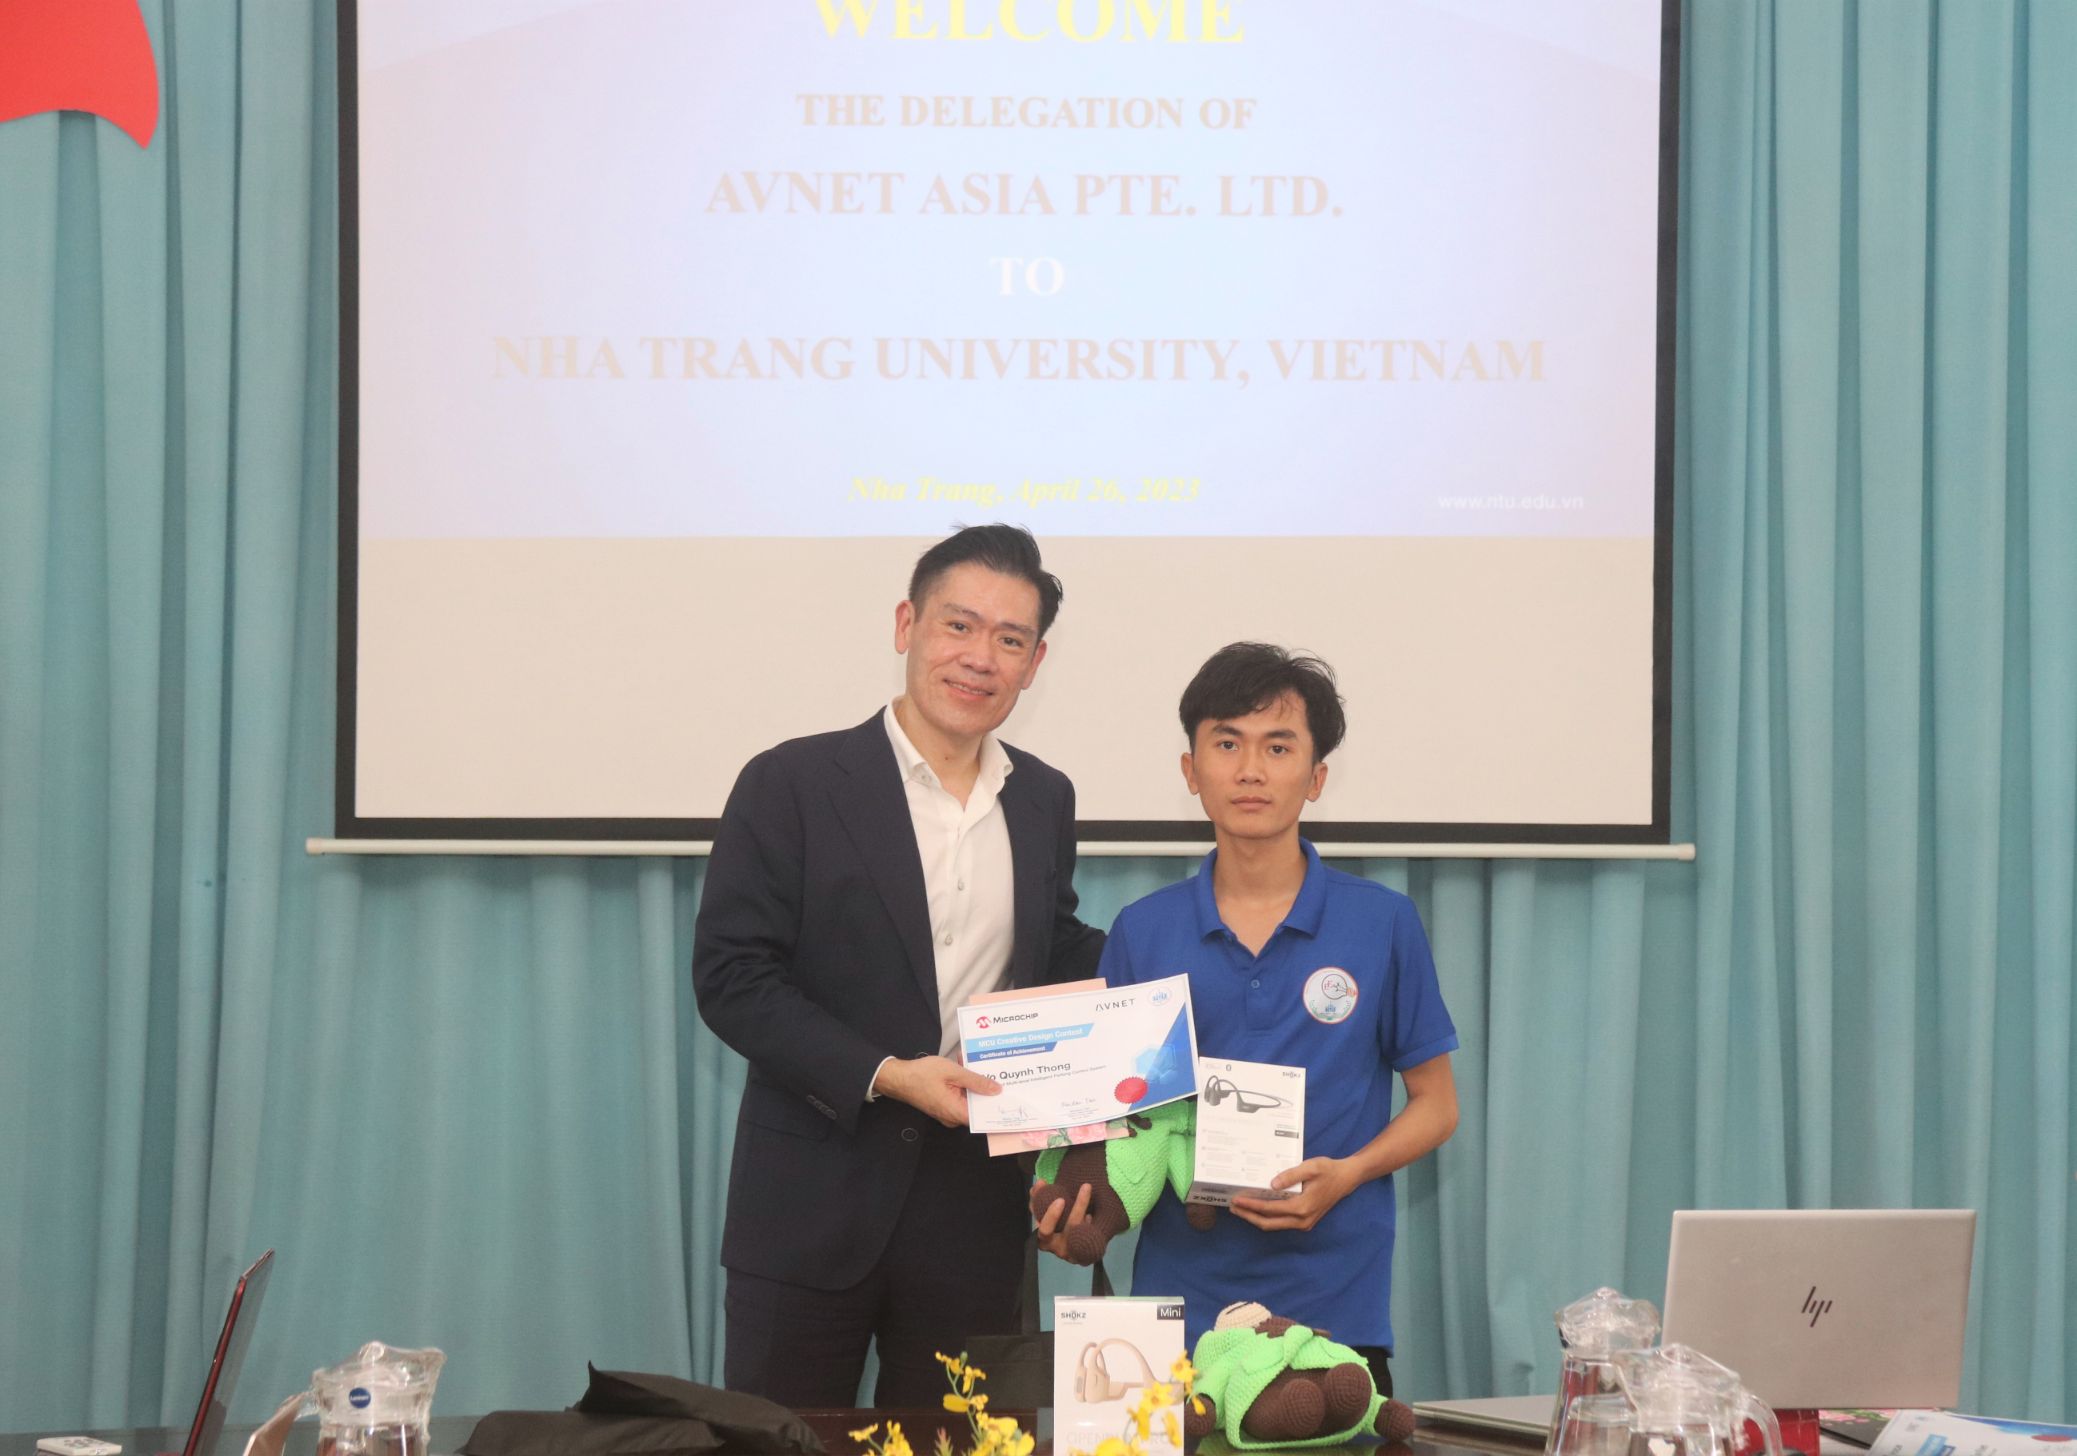 Winston Tan and Tran Tuan Khiem Avnet và Đại học Nha Trang trao giải thưởng cho sinh viên có phát minh sáng tạo